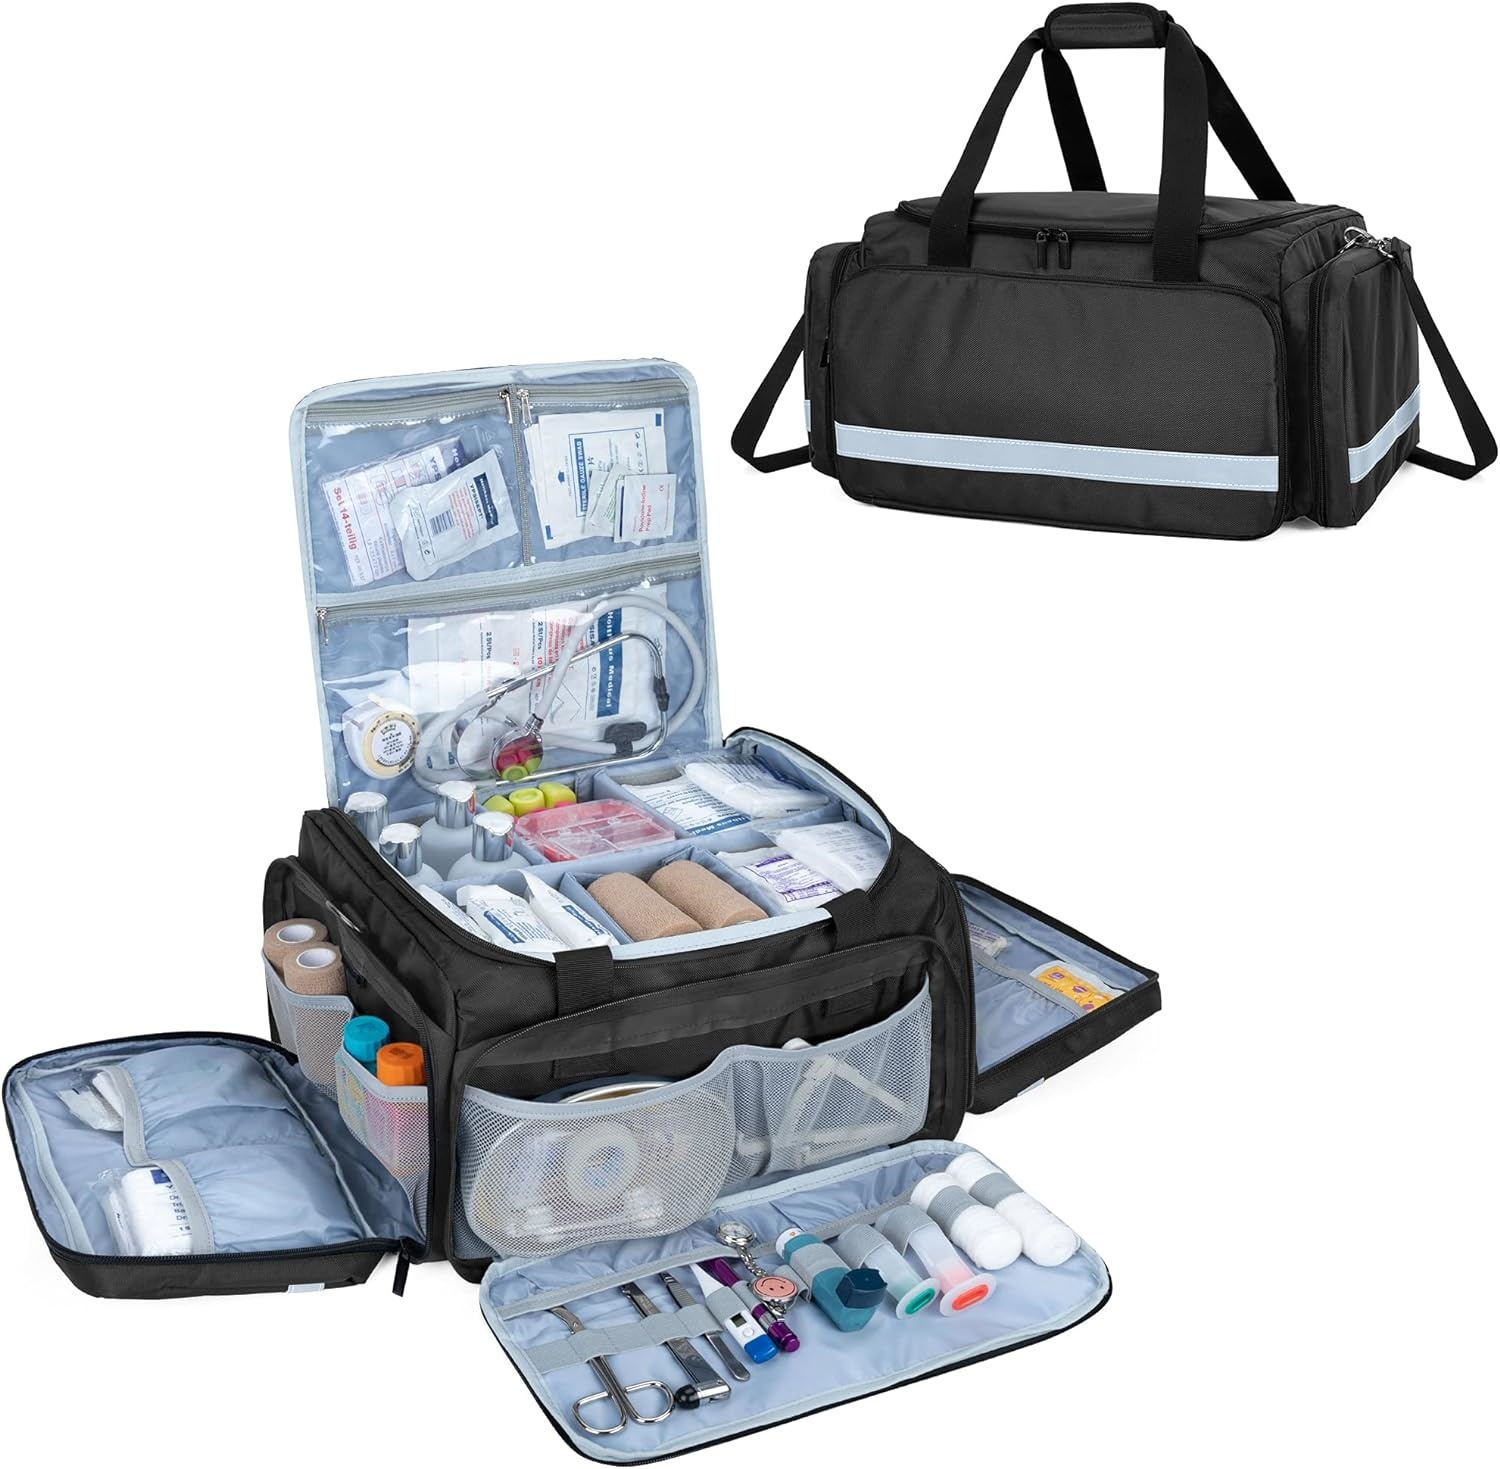 กระเป๋า Responder แรก, กระเป๋าใส่ทางการแพทย์ Pro, กระเป๋าชุดปฐมพยาบาลพร้อมช่องแบ่งด้านในสำหรับการดูแลชุมชน, พยาบาลสุขภาพที่บ้าน, กระเป๋าเท่านั้น, EMT, EMS, สีดำ - การออกแบบที่จดสิทธิบัตร